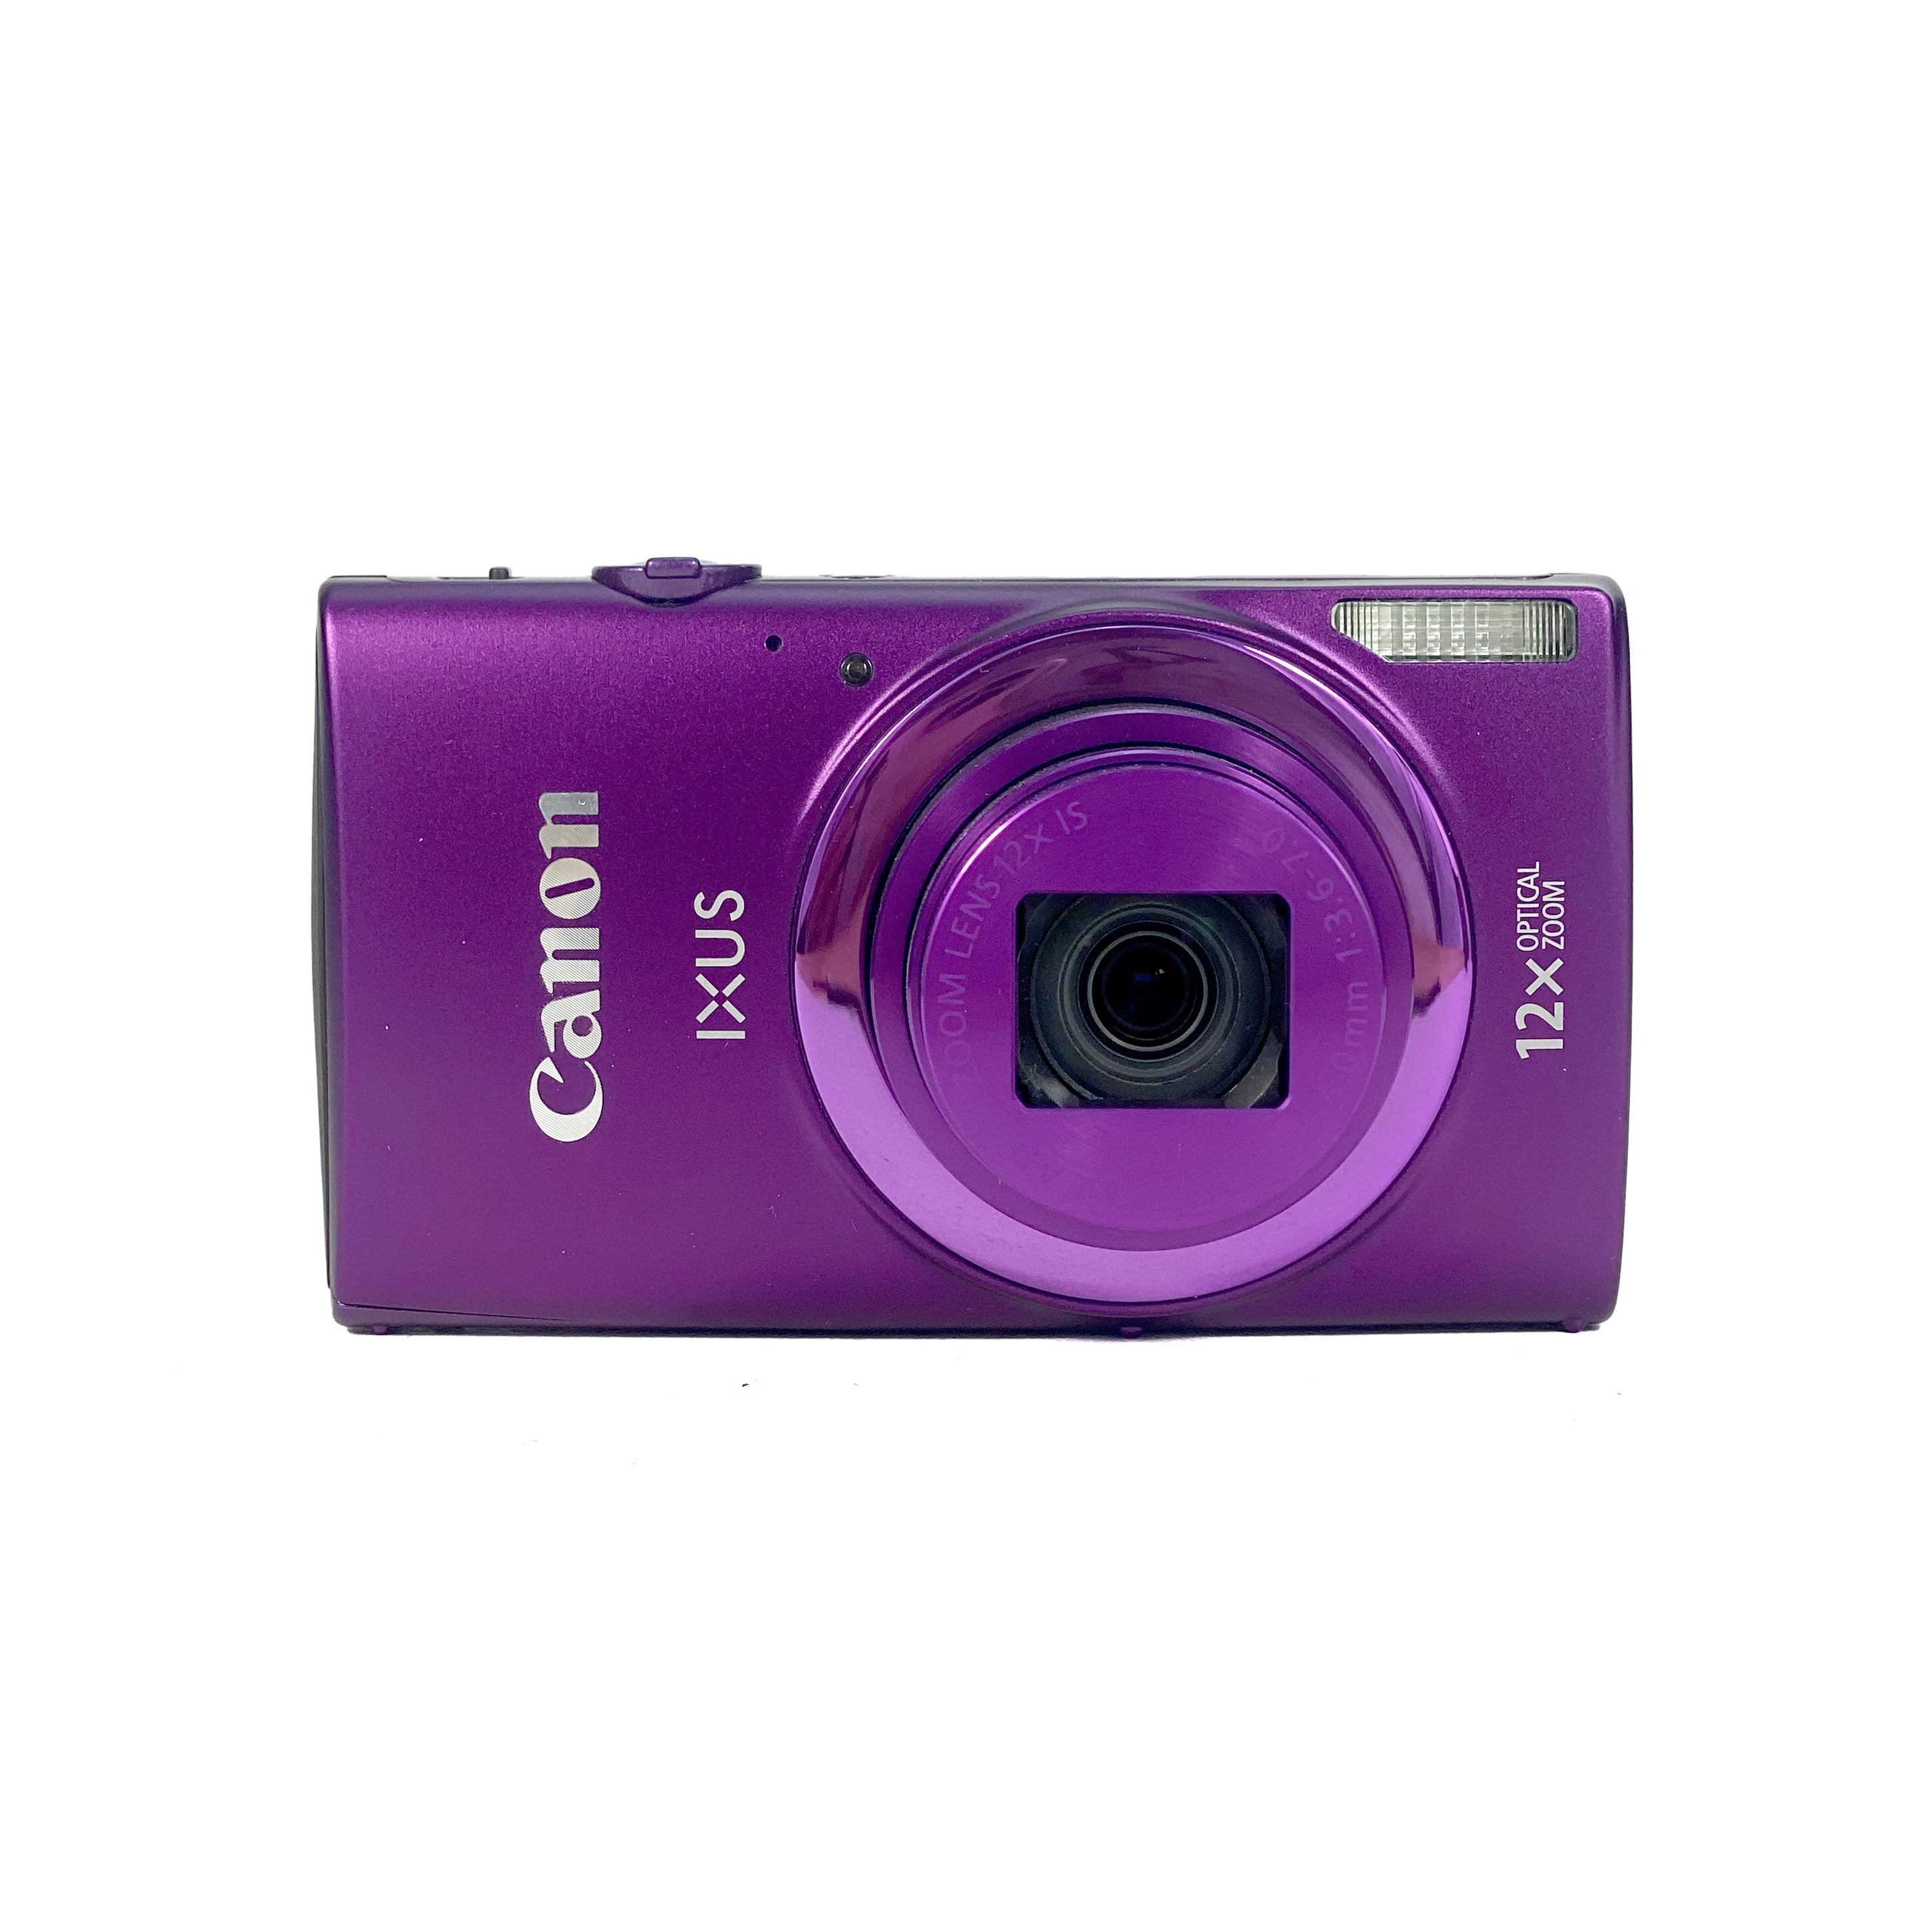 値引きする 競売 Canon IXY デジタルカメラ 630, 41% OFF